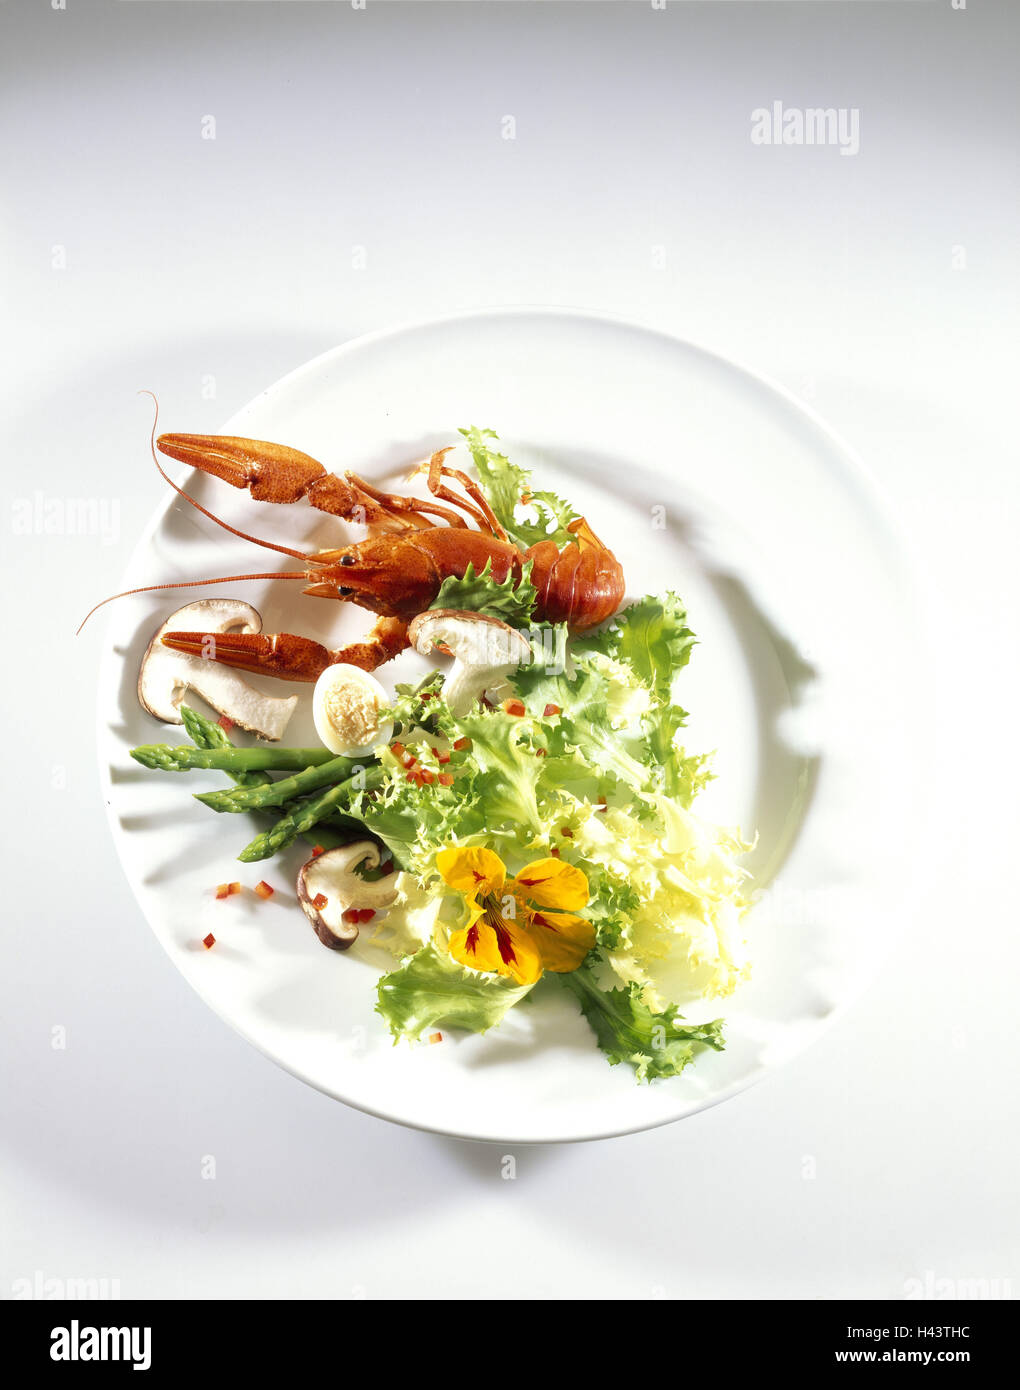 Plate, crayfish, quail eggs, asparagus, salad, Stock Photo